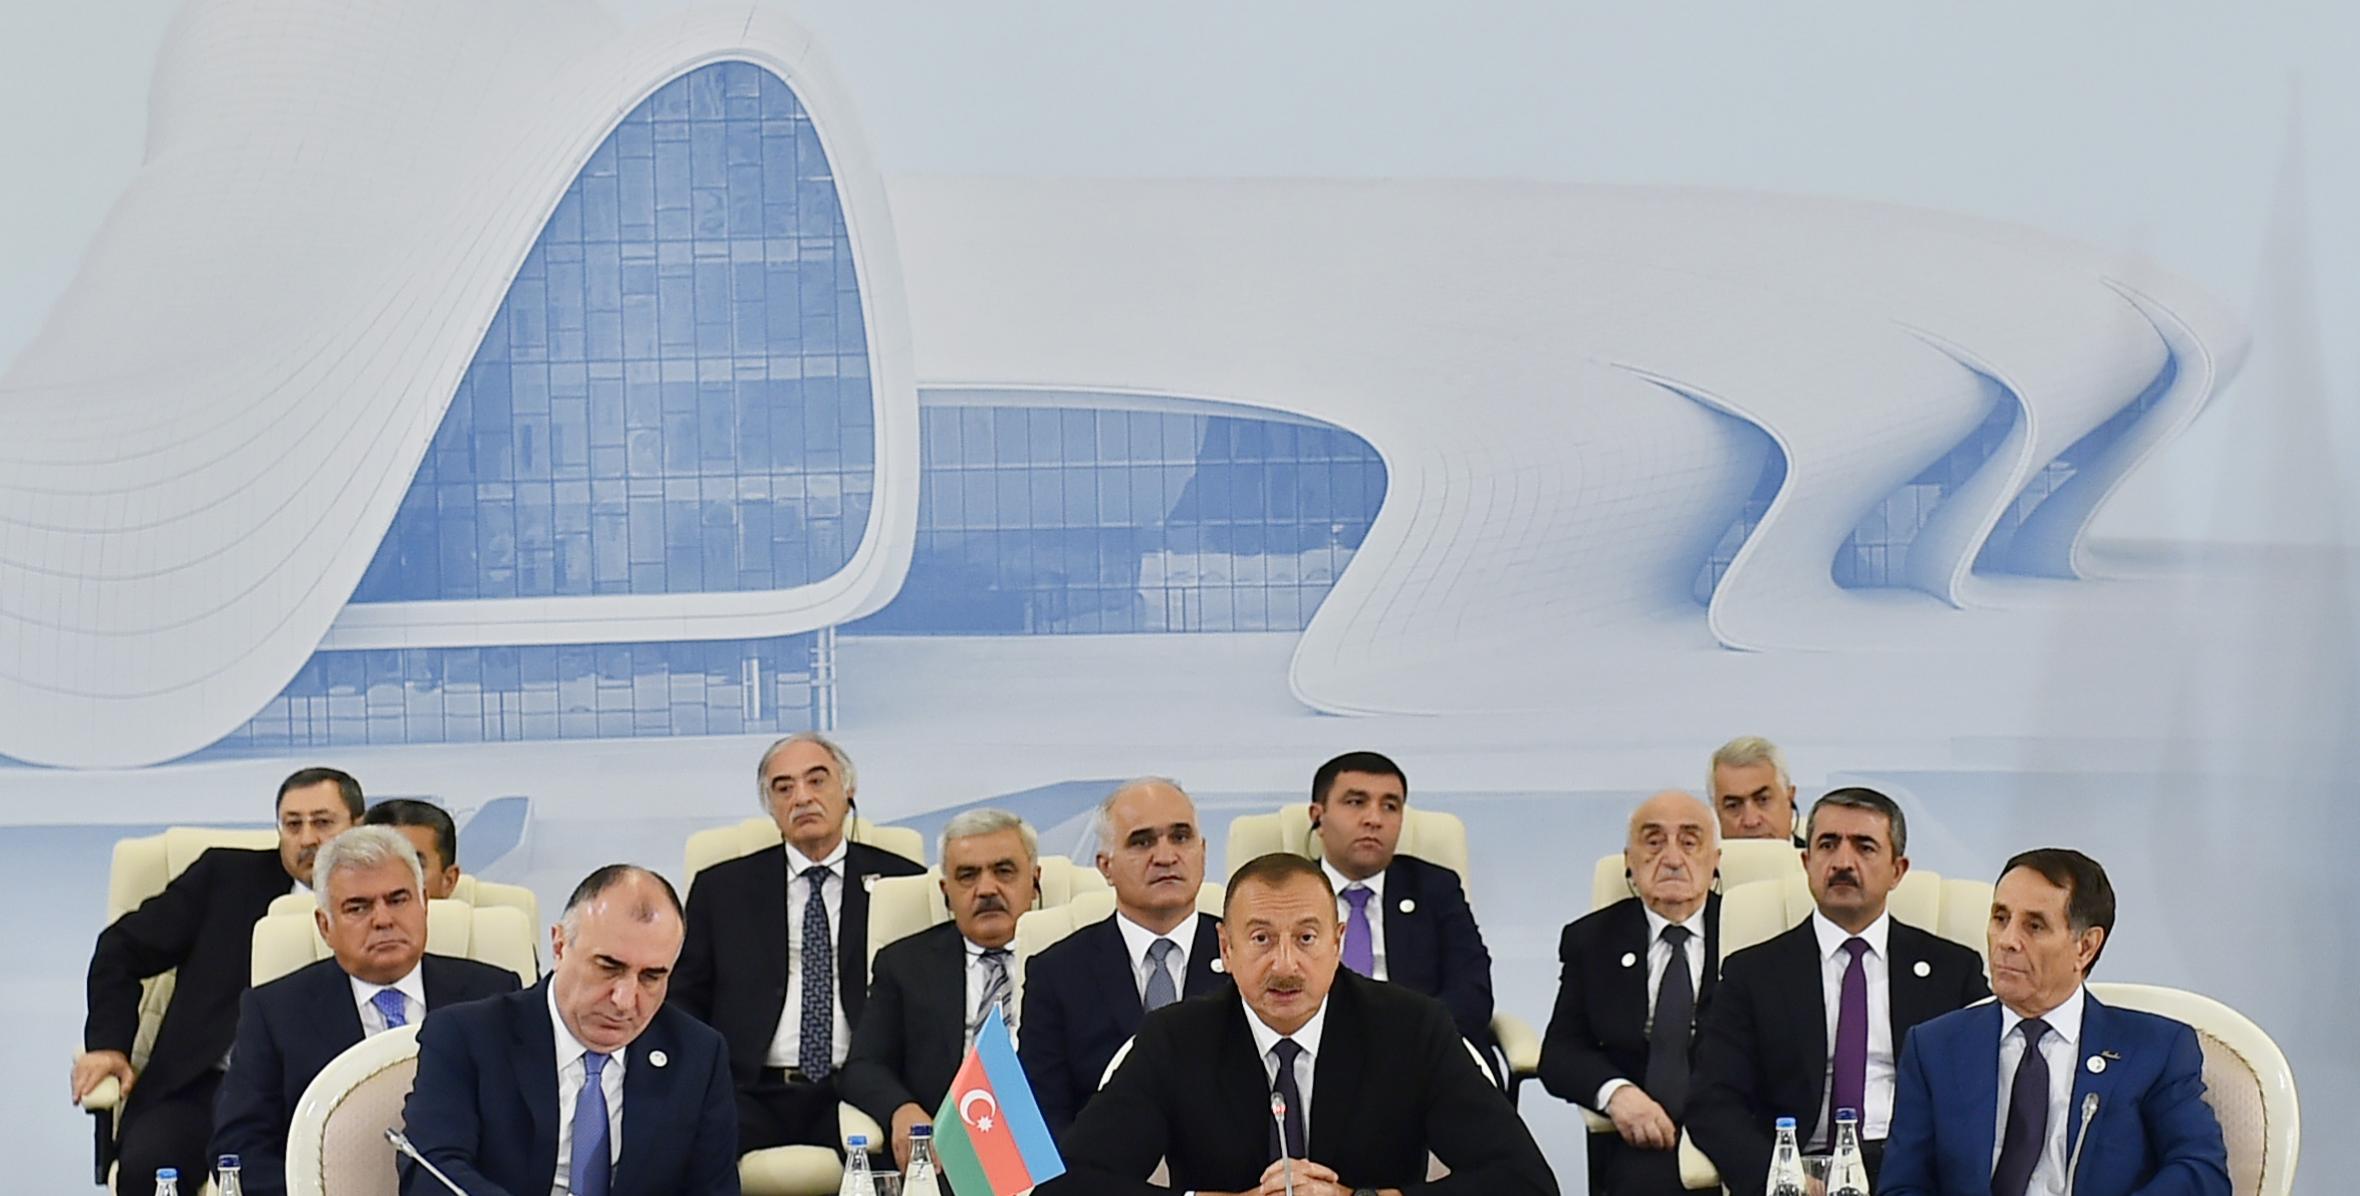 Вступительная речь Ильхама Алиева на трехсторонний Саммит глав государств Азербайджана, Ирана и России